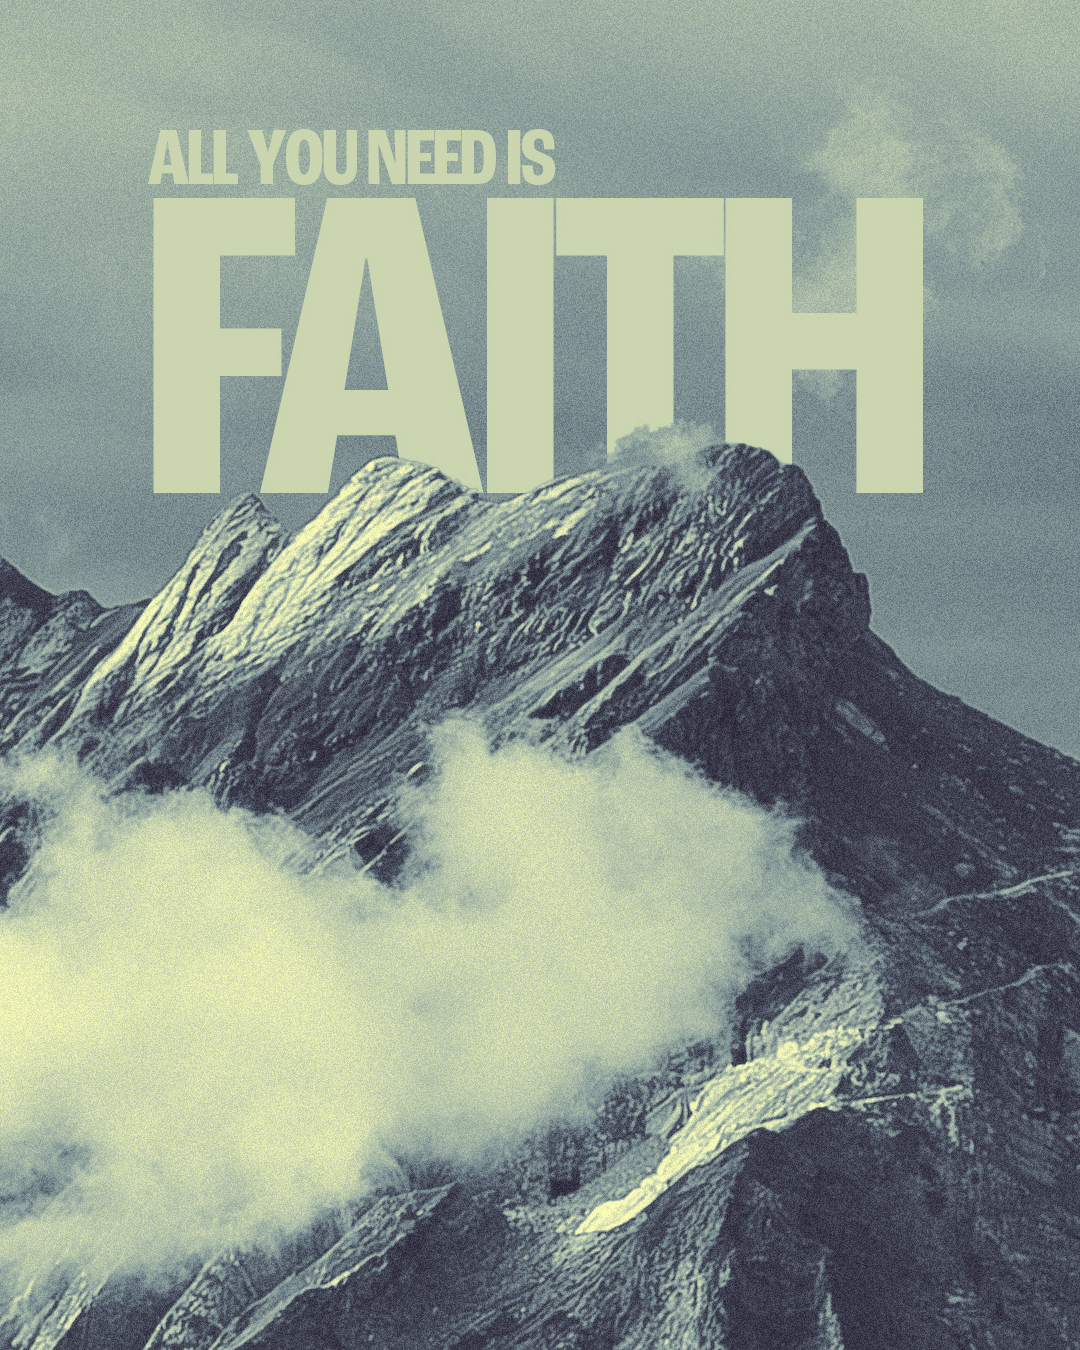 All you need is faith